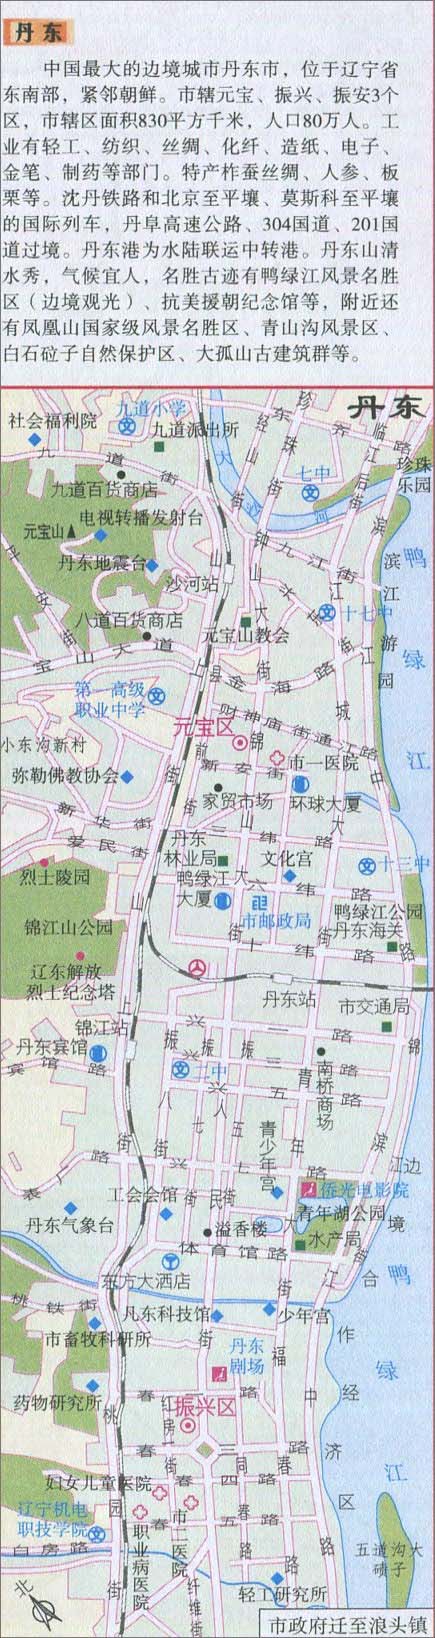 营口   阜新   辽阳   盘锦   铁岭   朝阳   葫芦岛 上一张地图图片